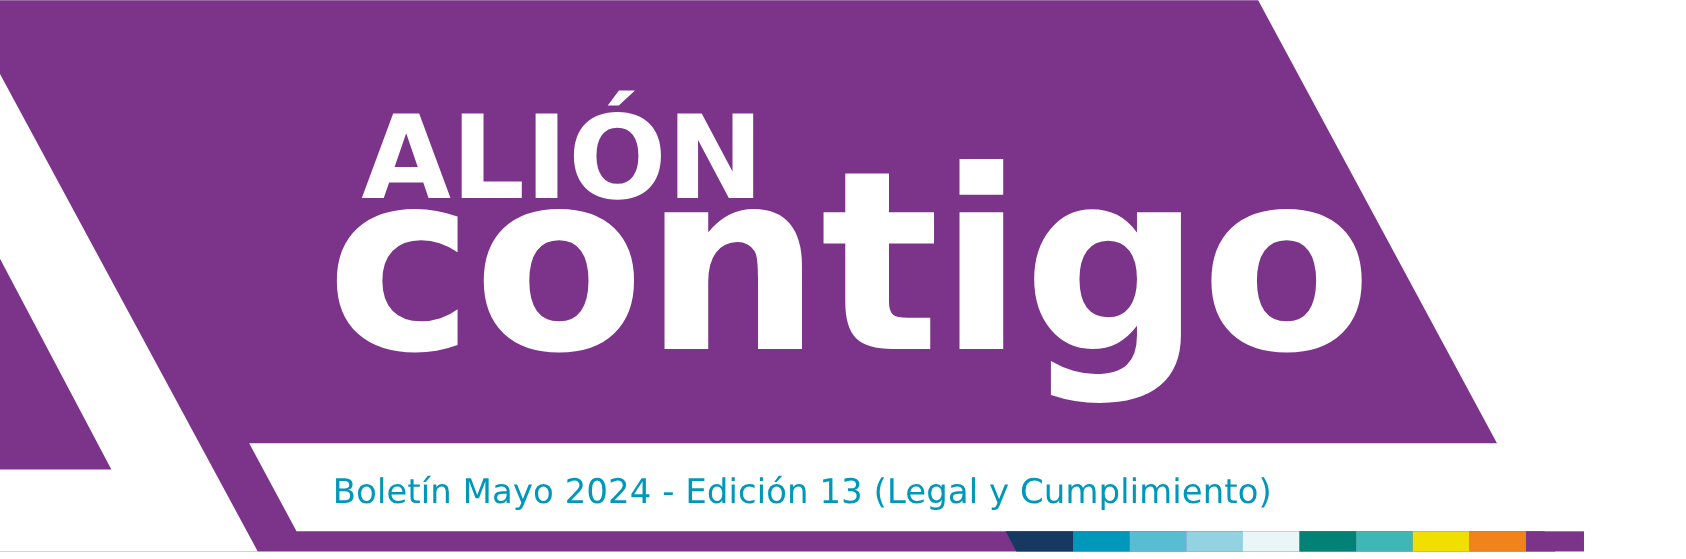 Boletin Mayo 2024 - Edicion 13 (Legal y Cumplimiento)